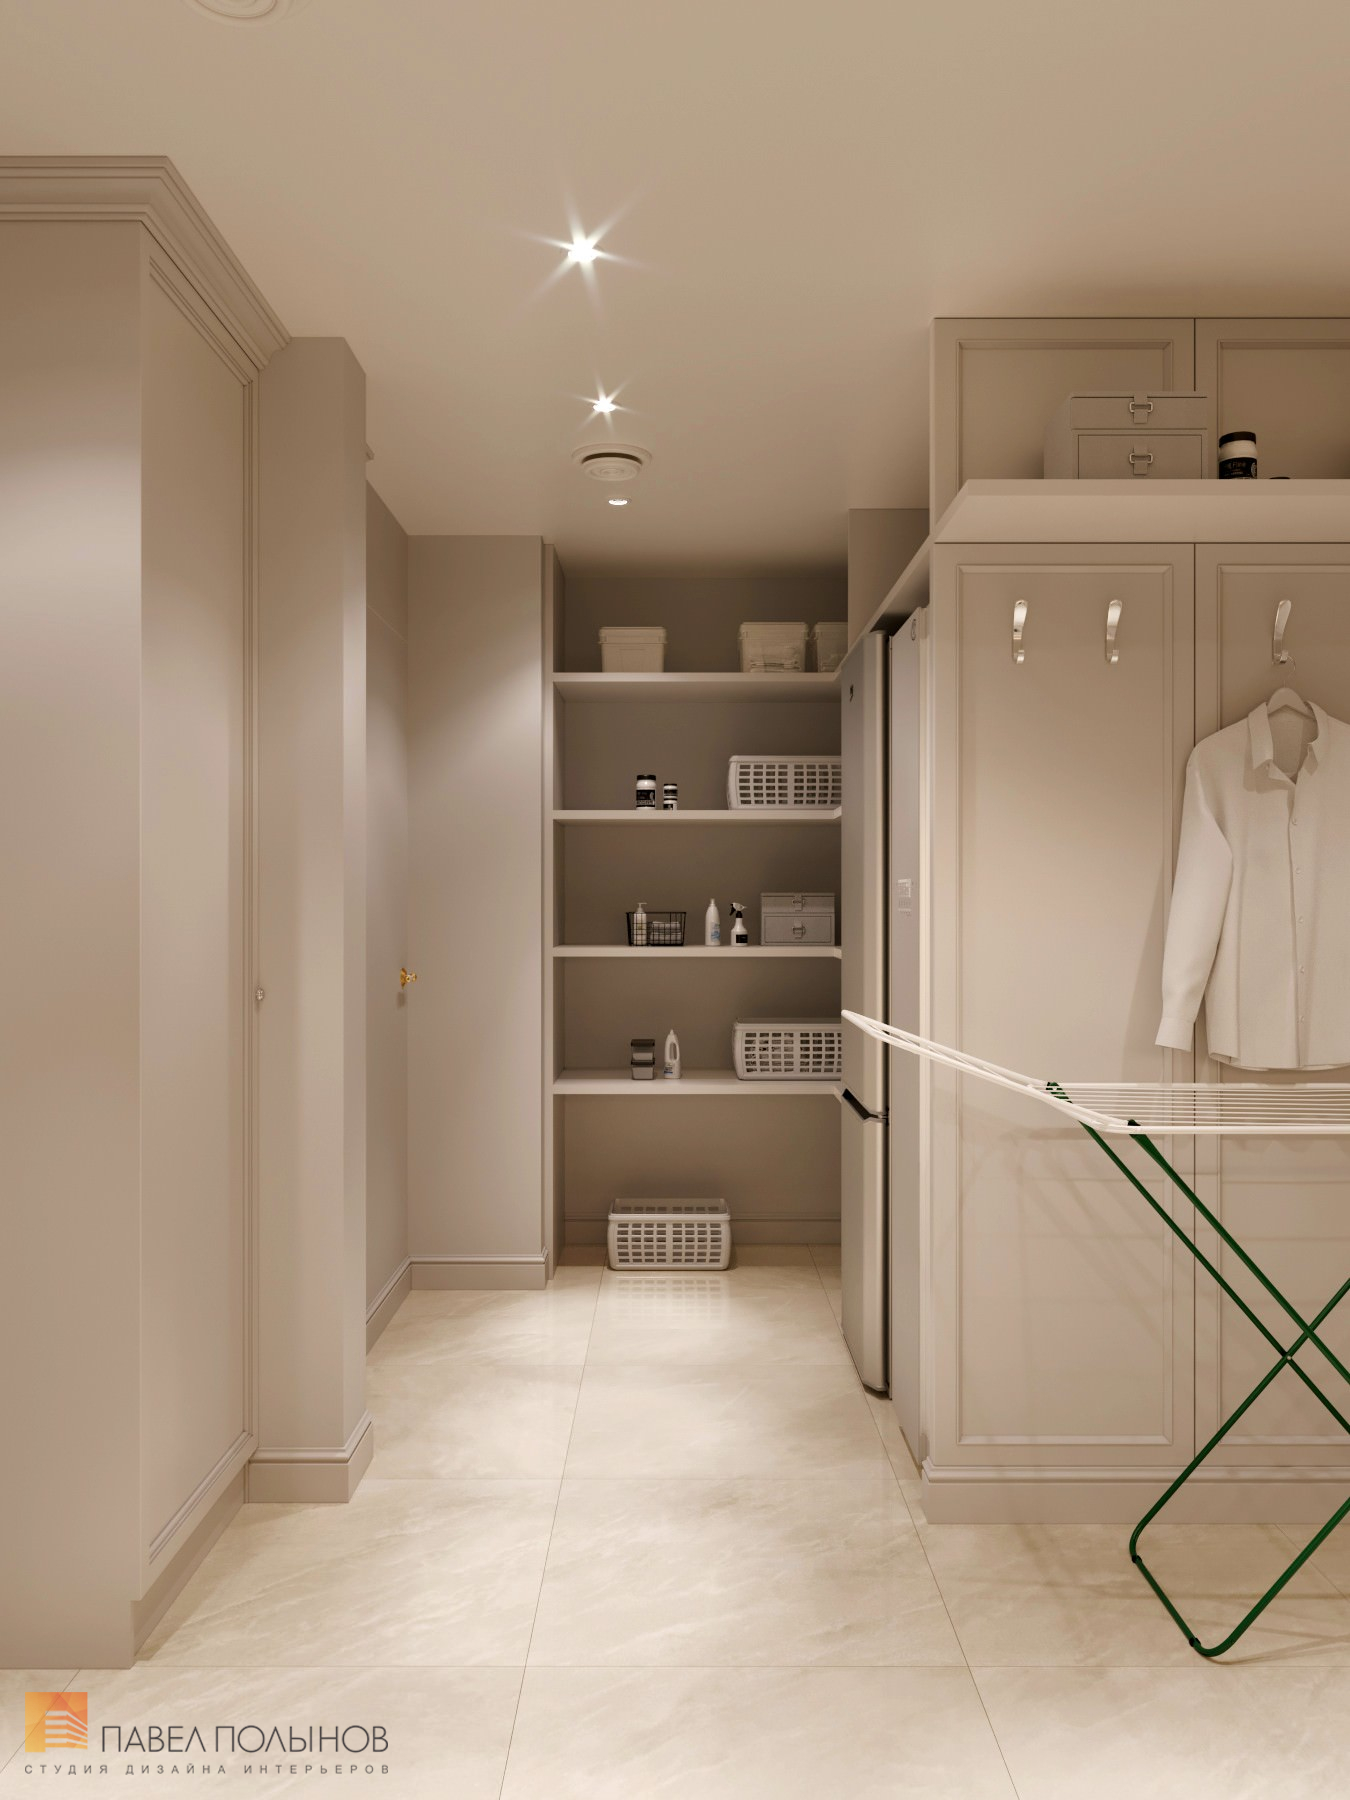 Фото дизайн интерьера хозяйственной комнаты из проекта «Дизайн квартиры в стиле современной классики, ЖК «Riverside», 180 кв.м.»